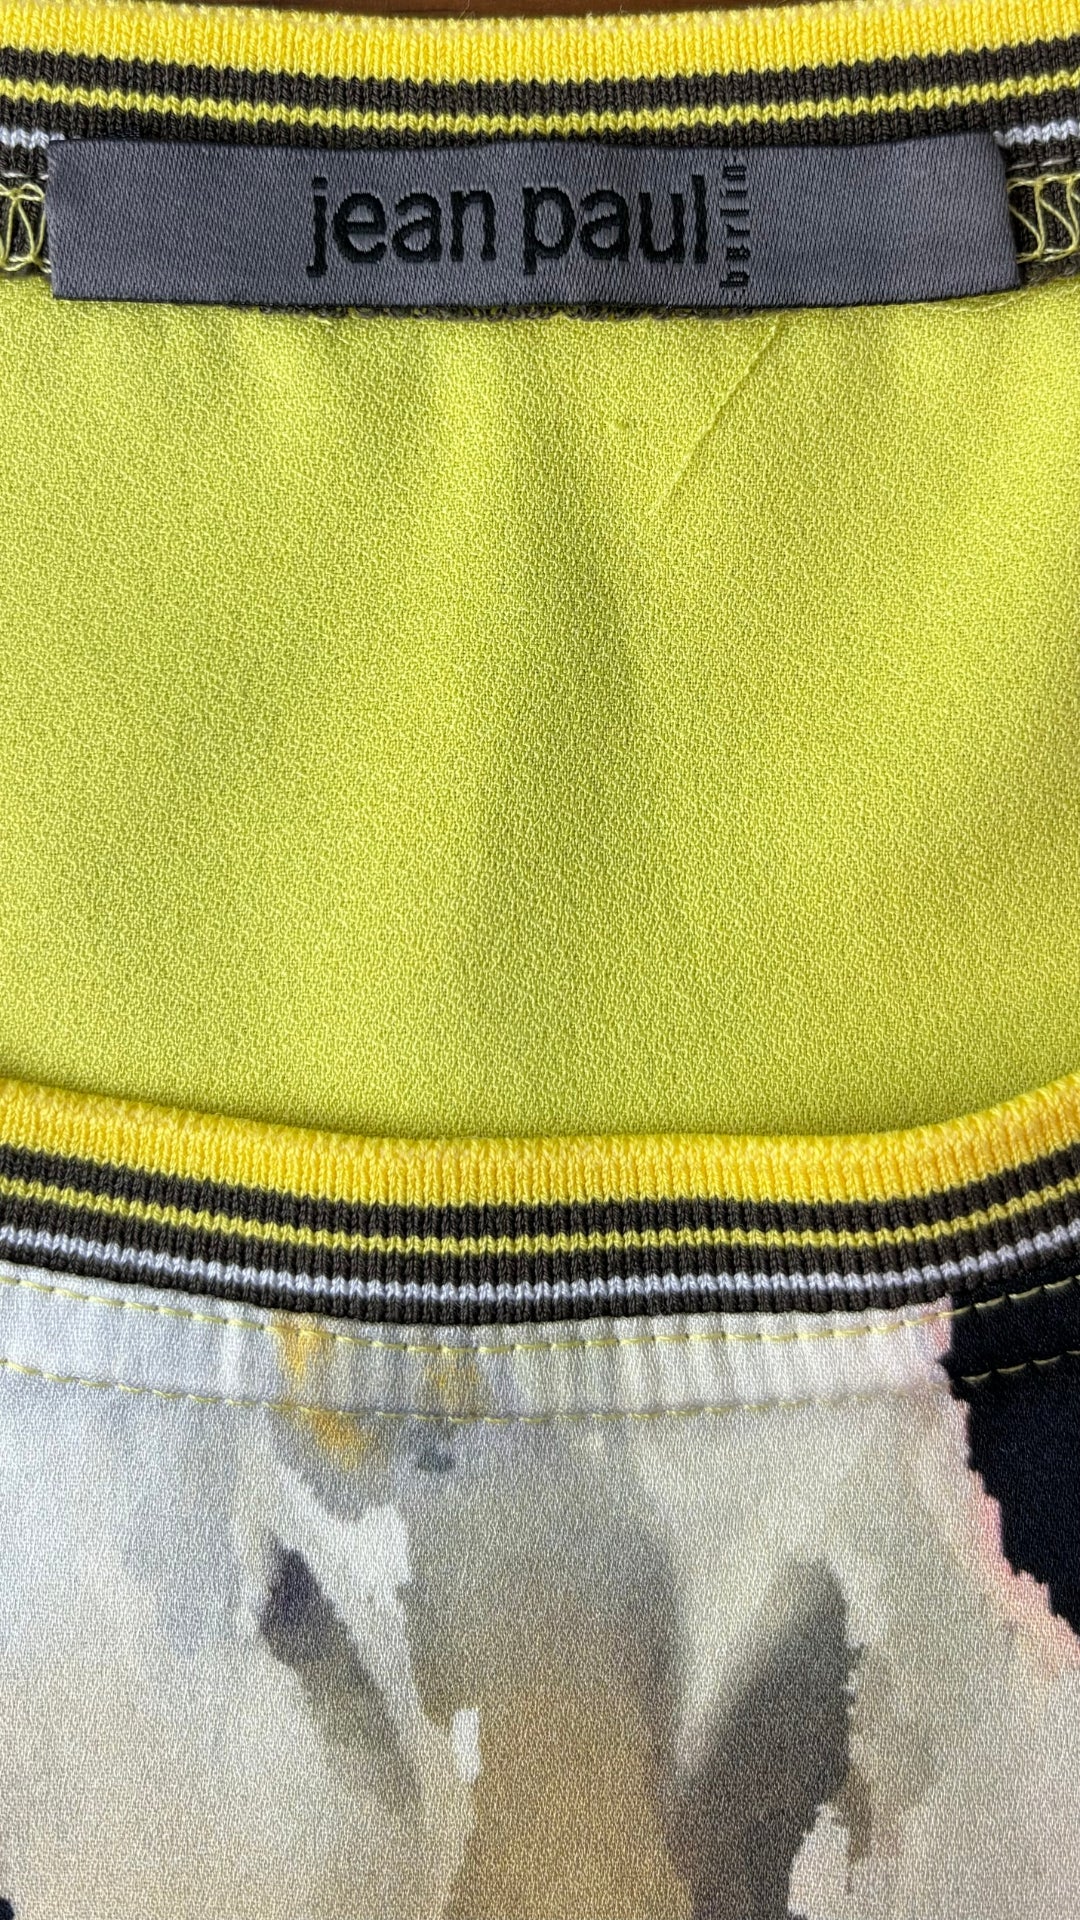 Chandail à motif abstrait jaune Jean Paul Berlin, taille 6. Vue de l'étiquette de marque.